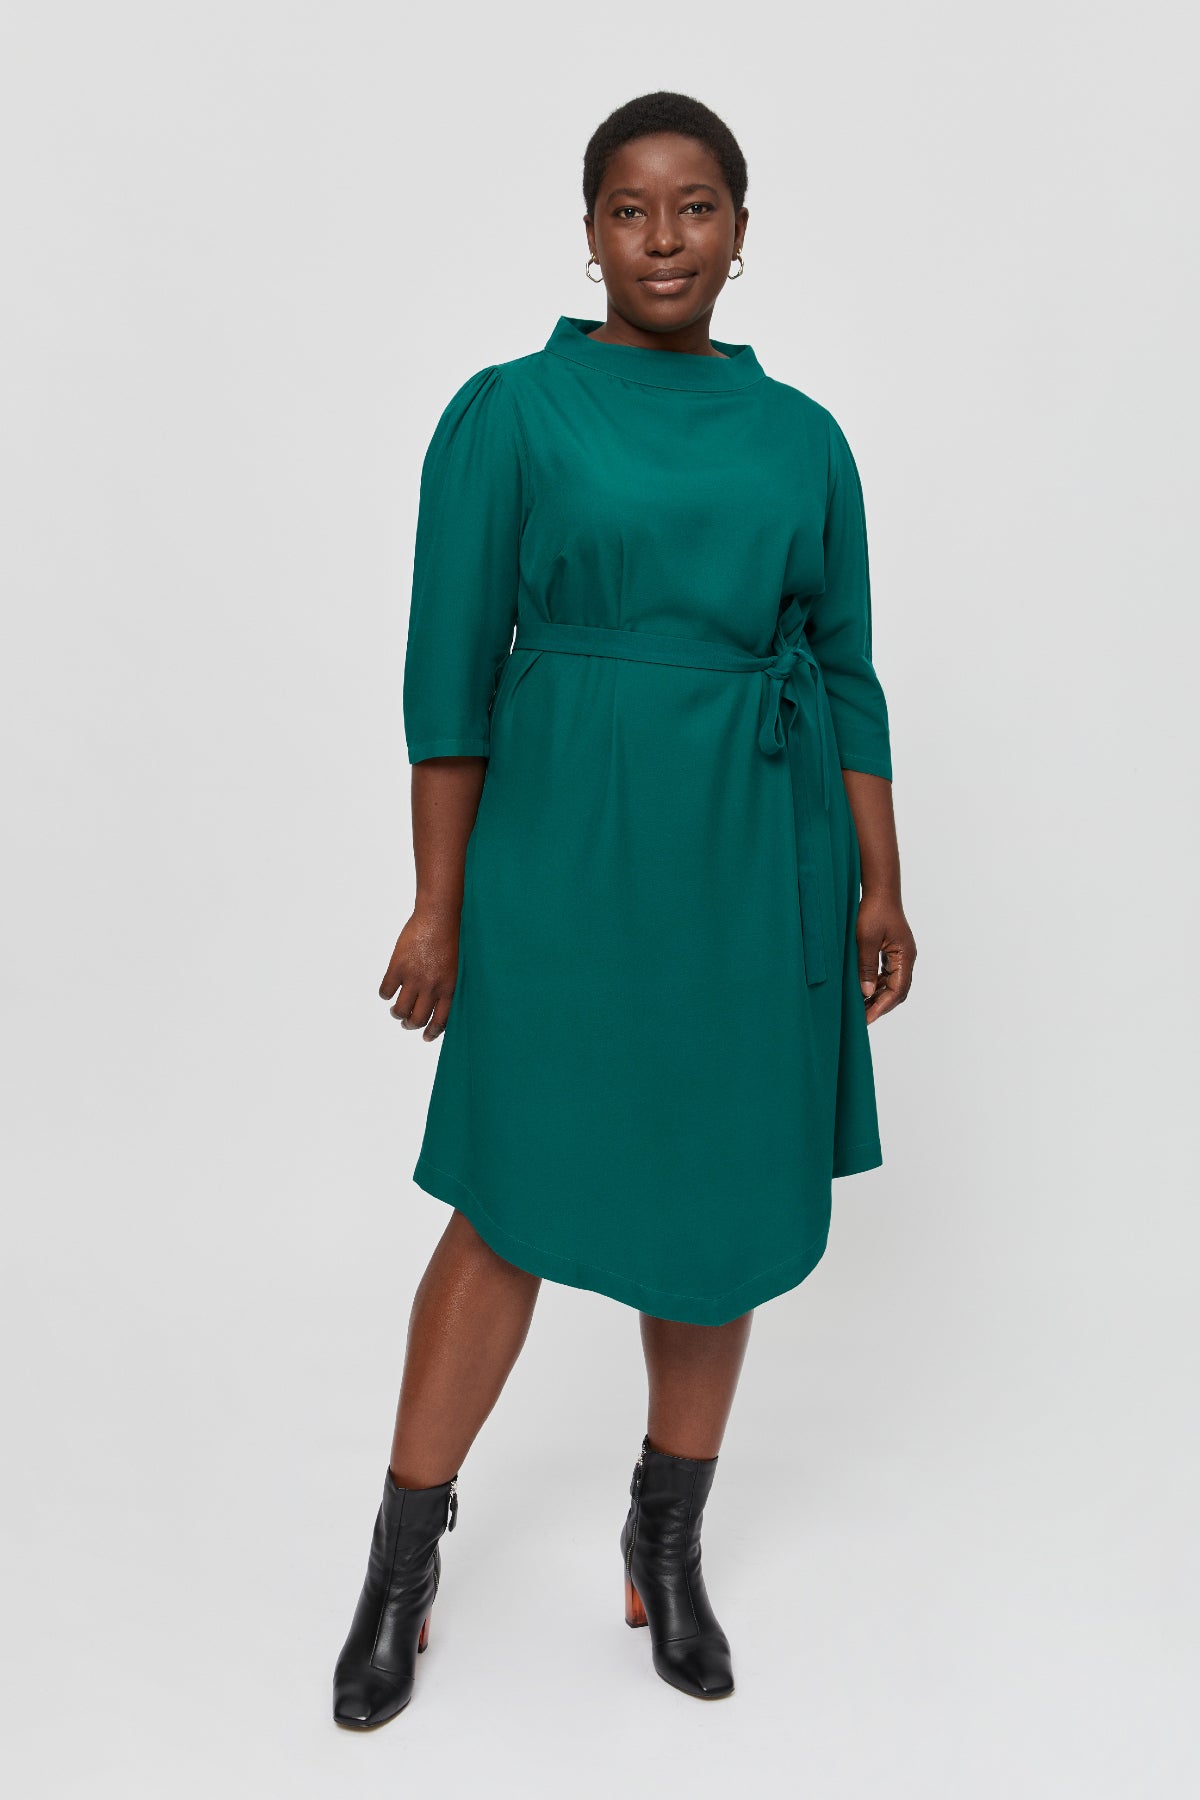 Grünes Kleid Suzi aus 100% Viskose von Ayani